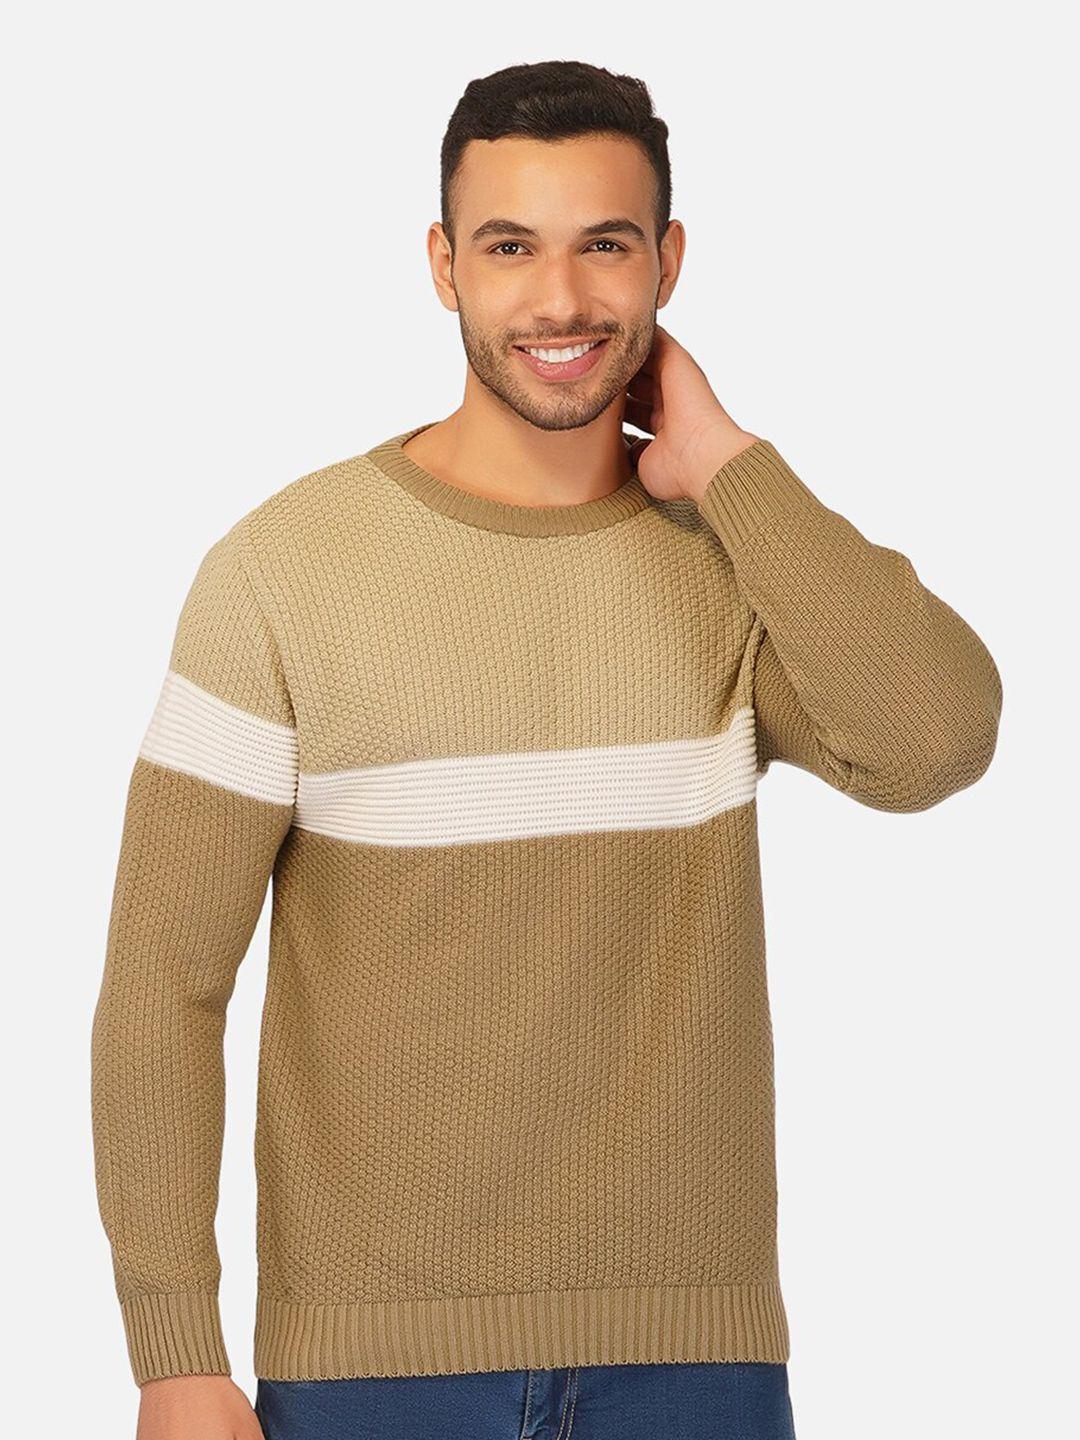 joe-hazel-men-beige-&-white-colourblocked-pullover